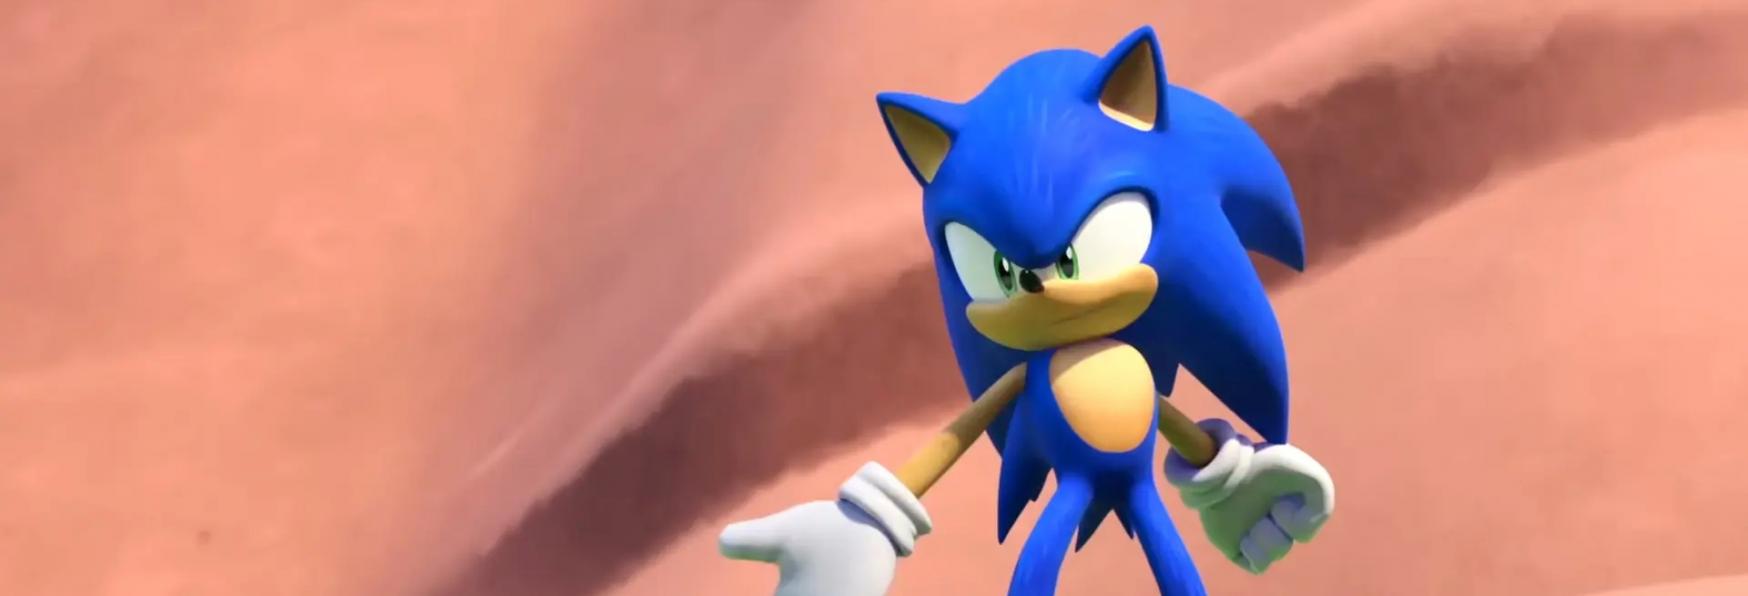 Sonic Prime: il Teaser Trailer e il Periodo di Uscita della nuova Serie Animata in arrivo su Netflix